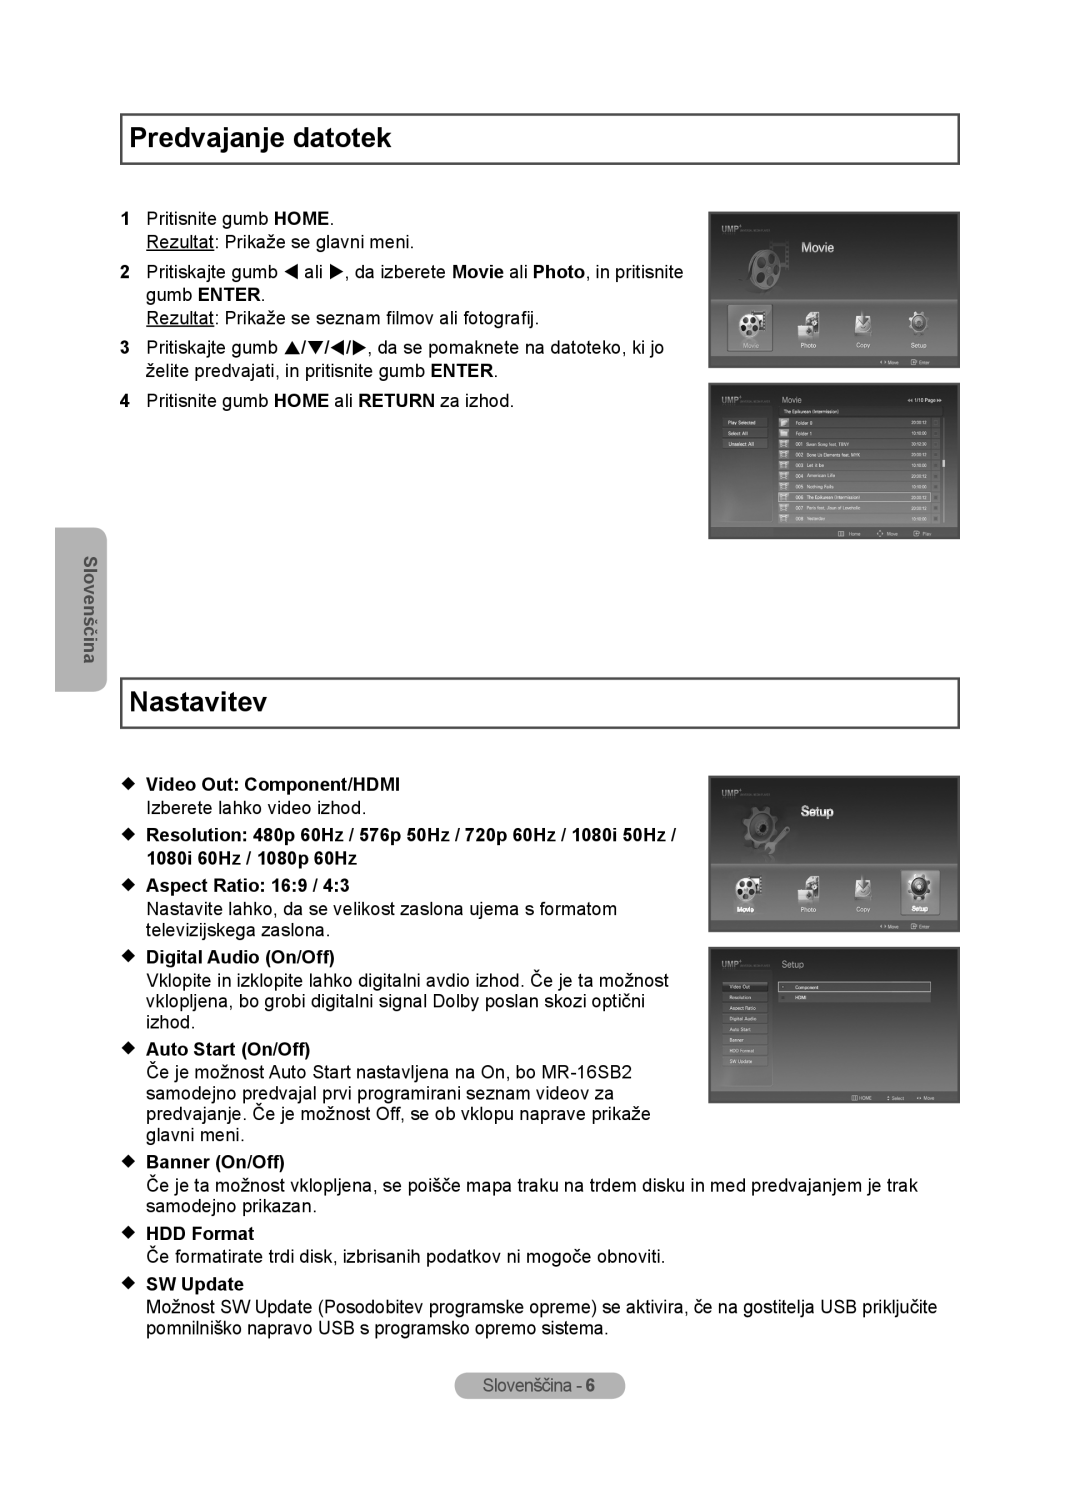 Samsung MR-16SB2 Predvajanje datotek, Nastavitev, Slovenščina,  Video Out Component/HDMI,  Aspect Ratio 169,  SW Update 